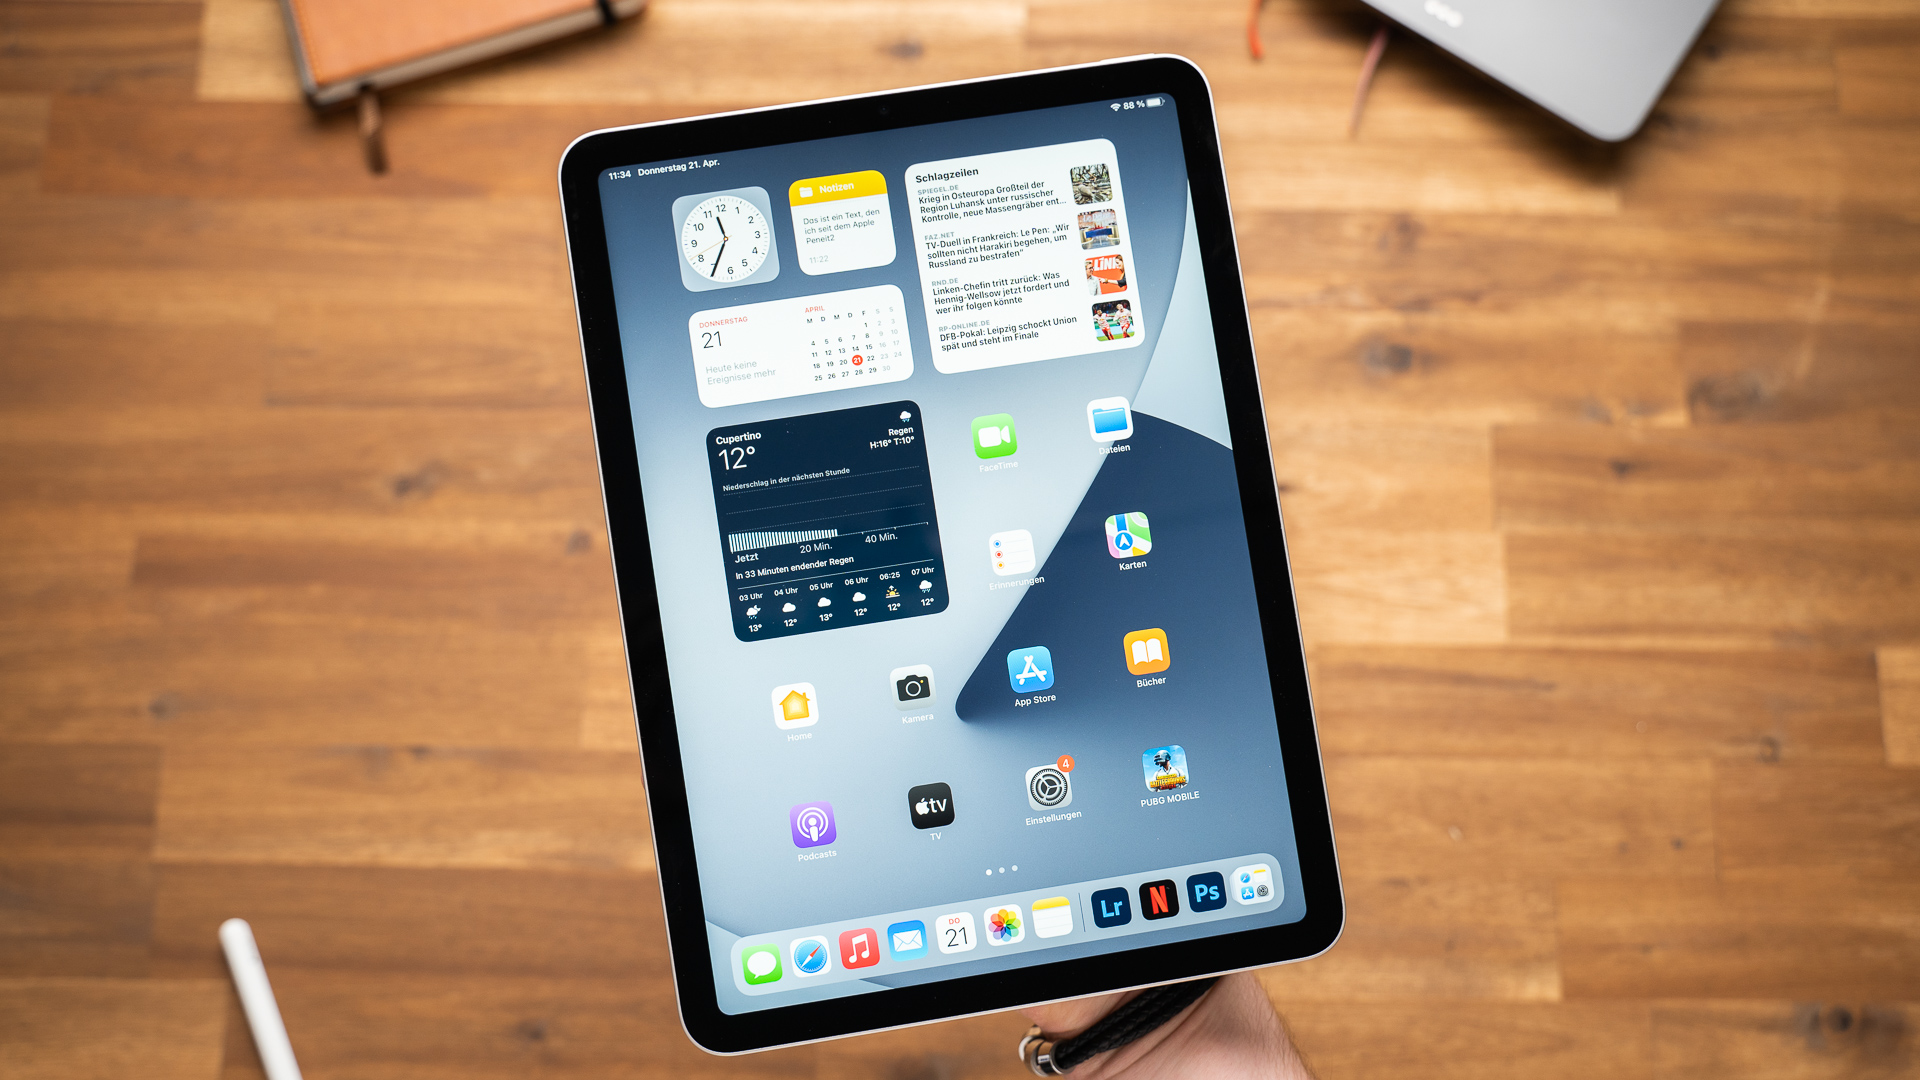 Ảnh nền đẹp, chất lượng cao của iPad Air 2020 mới